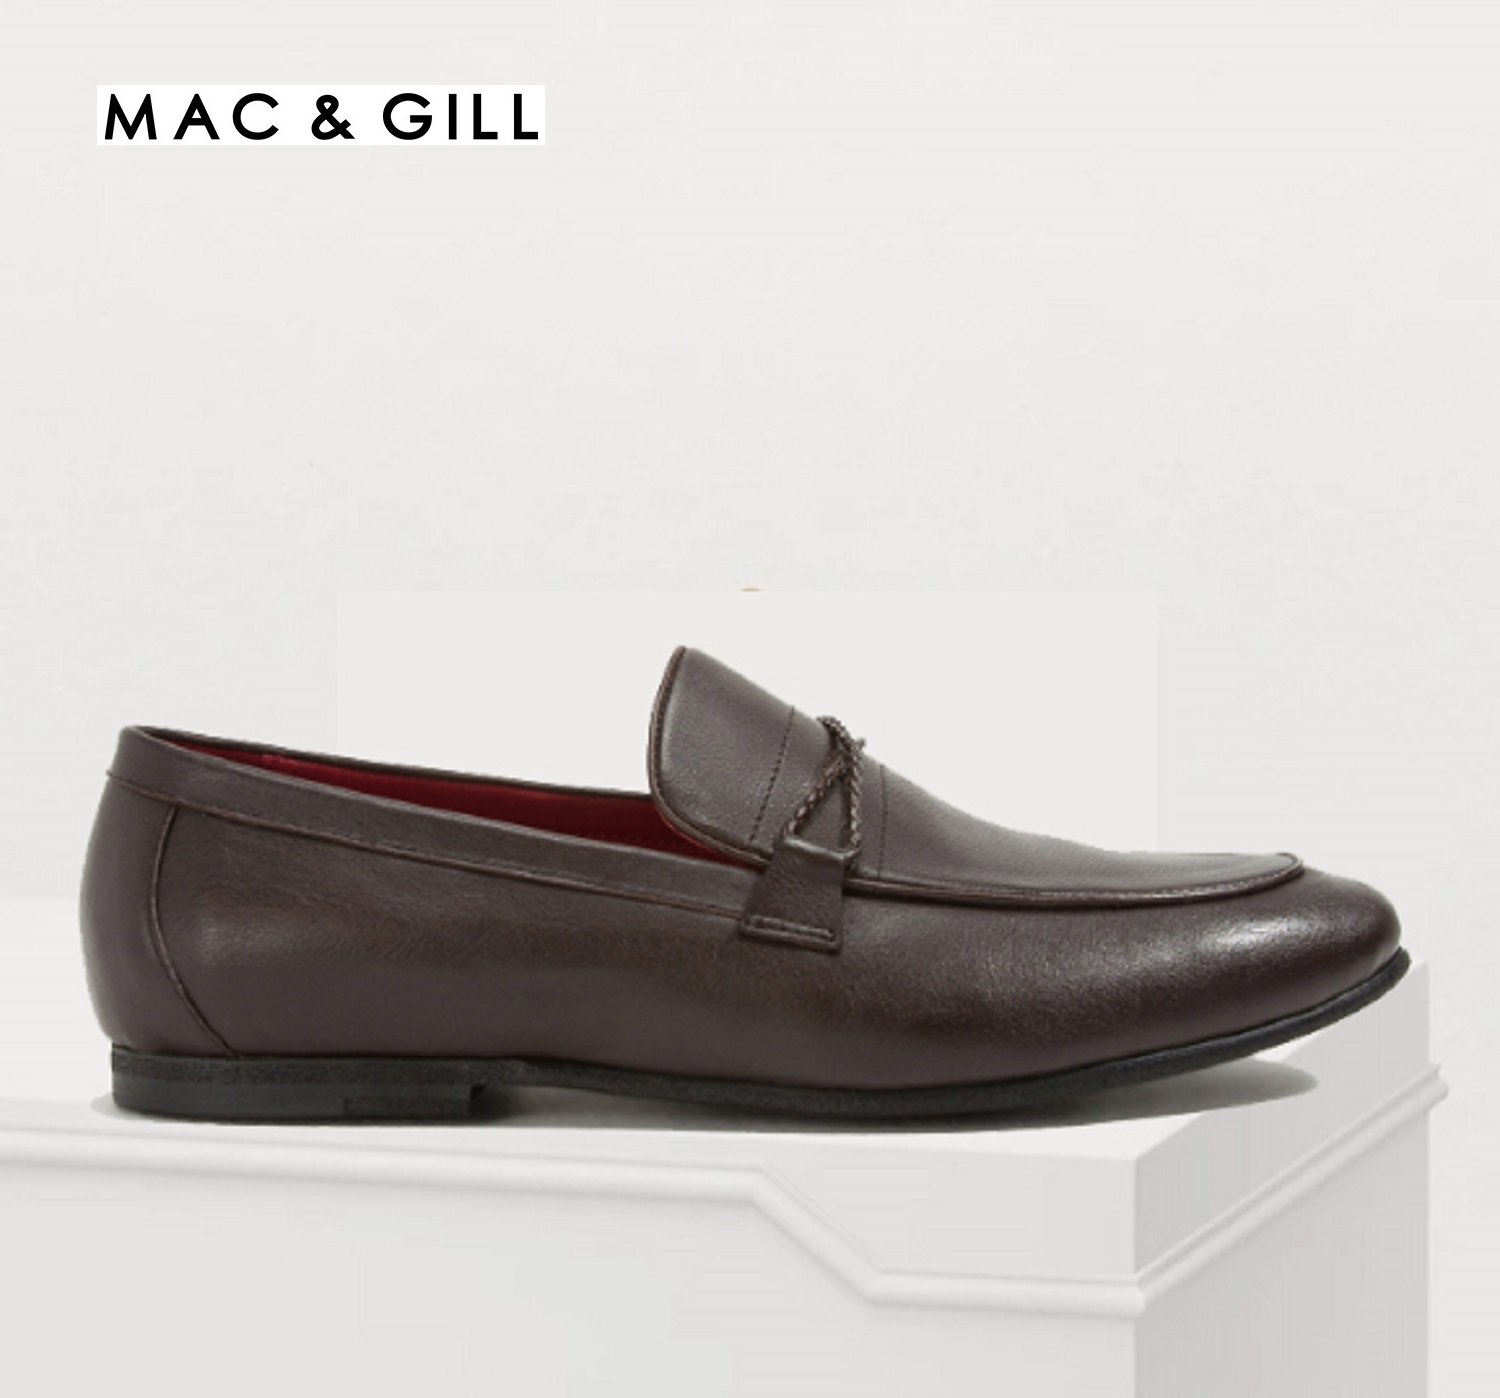 รองเท้าผู้ชายหนังแท้แบบโลฟฟเฟอร์สีน้ำตาล MAC&GILL